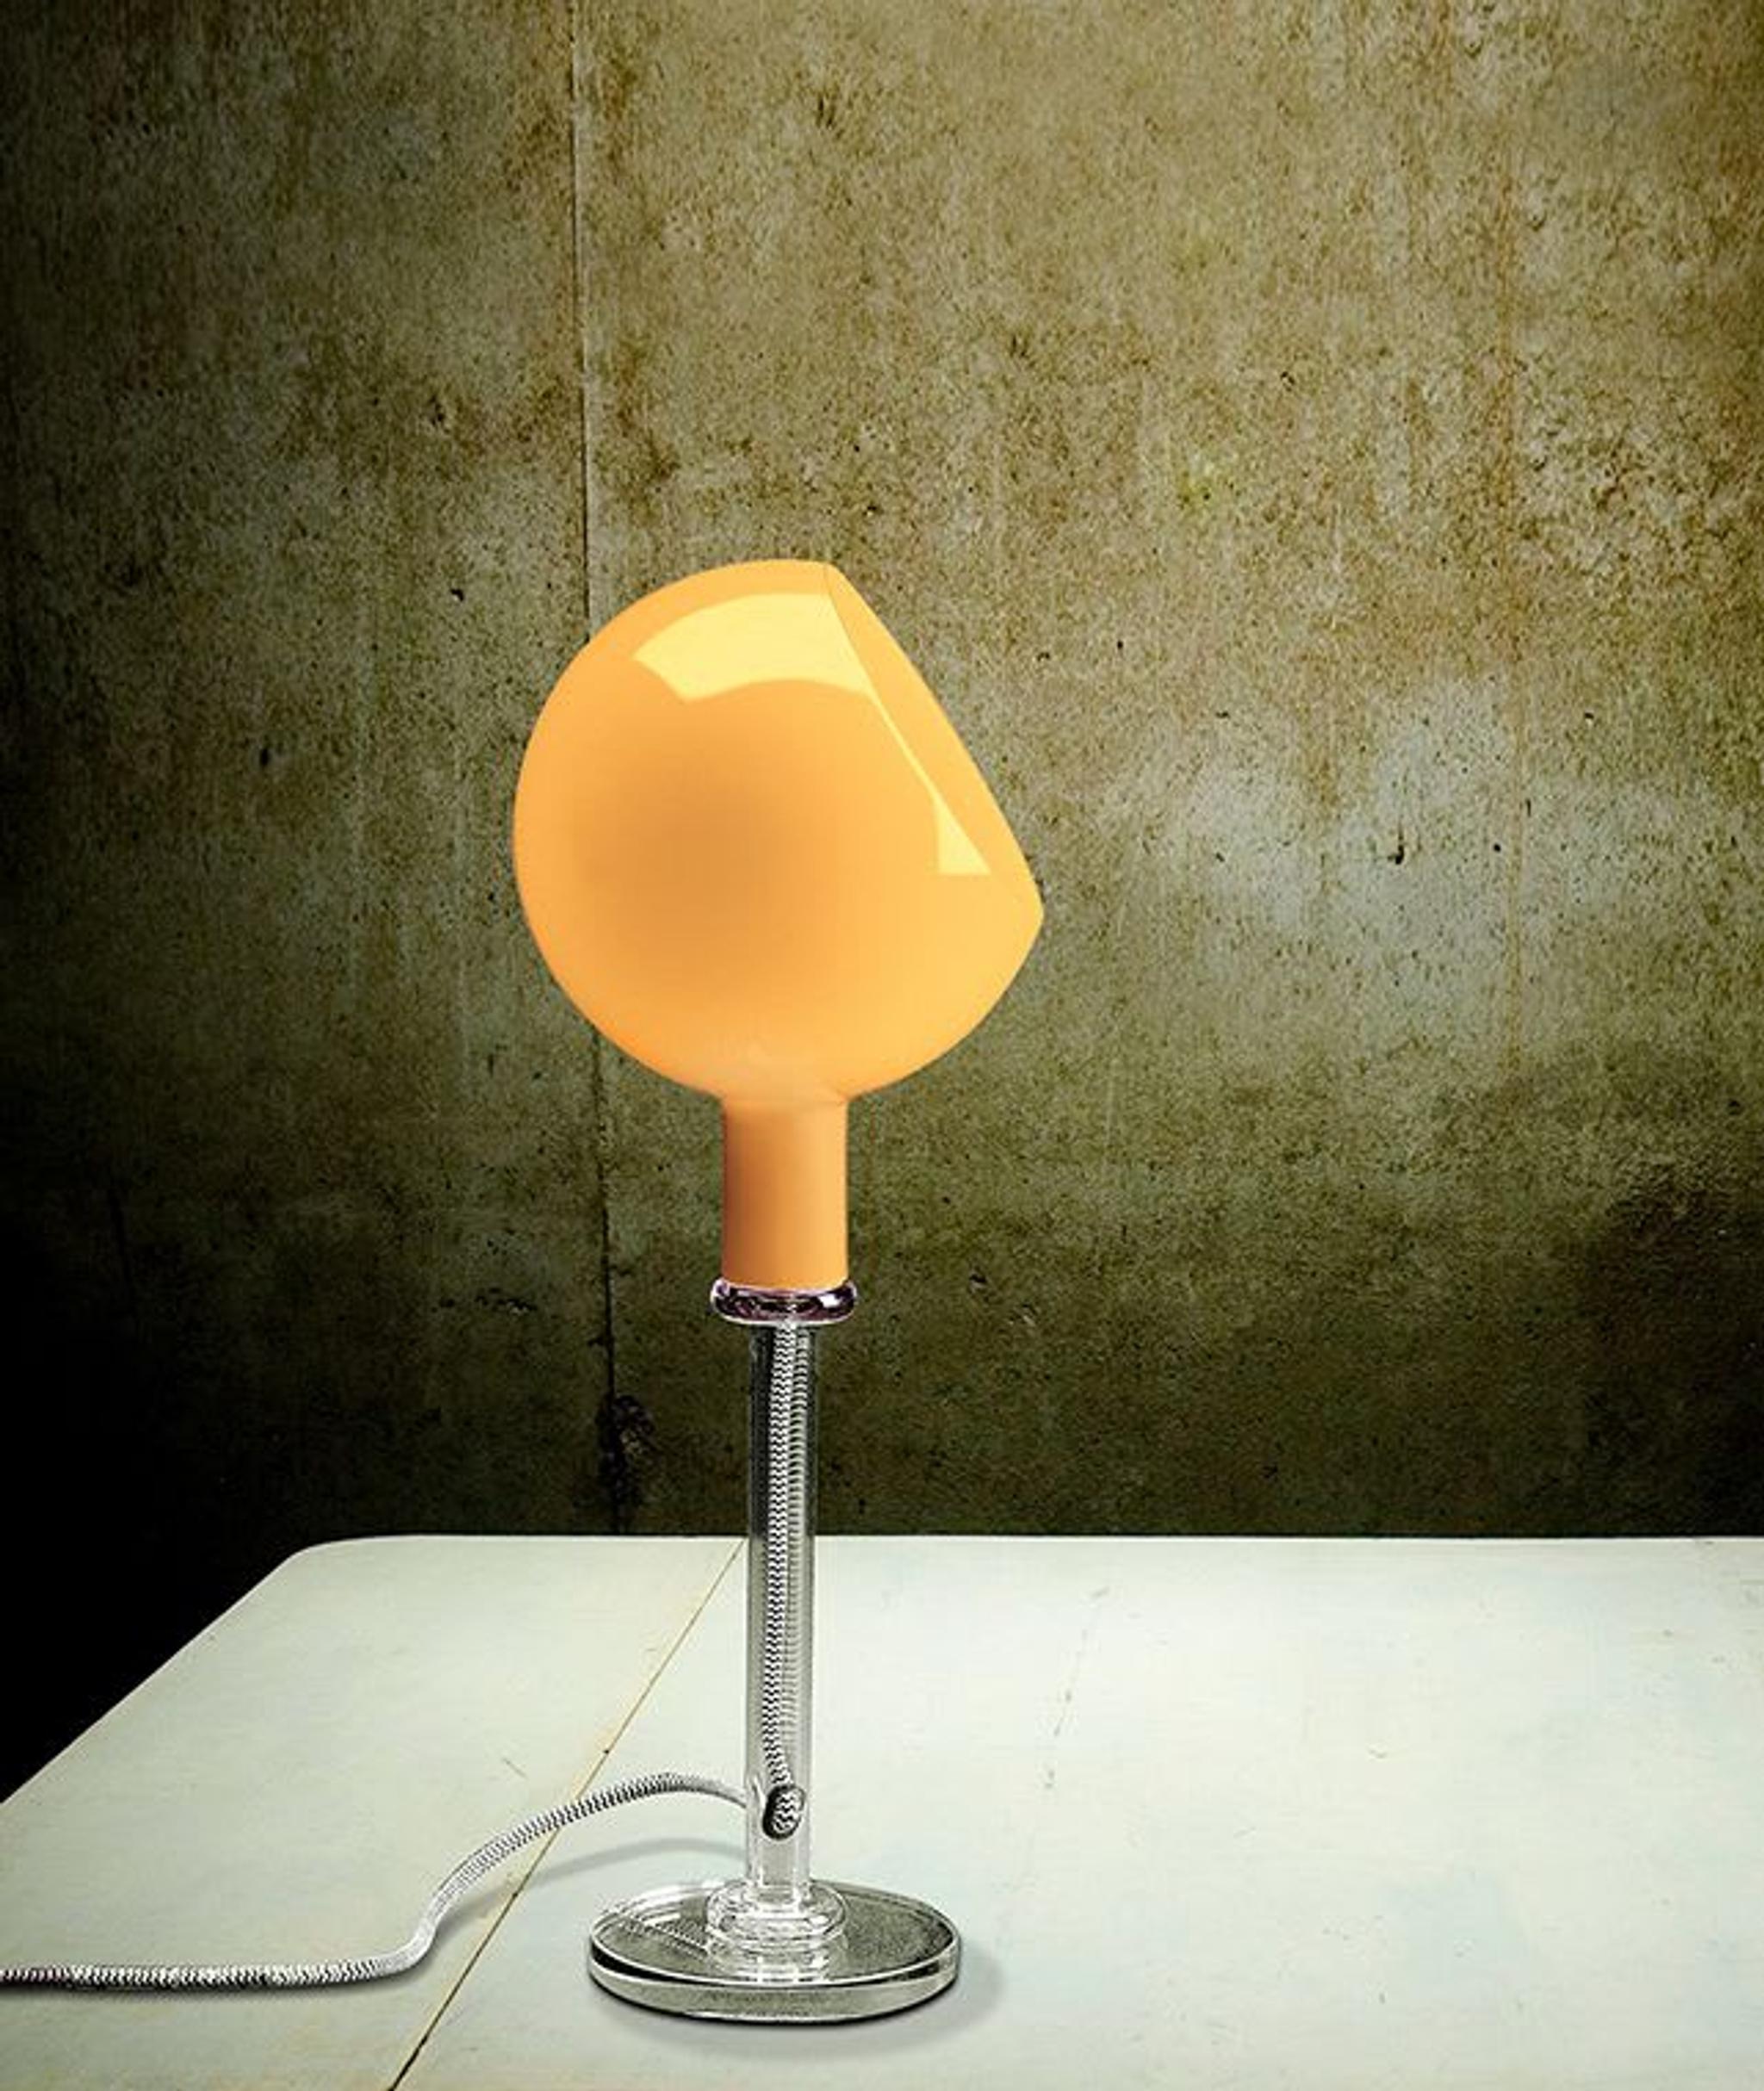 Découvrez la Lampe Pipistrello mini sur batterie : Icone du Design